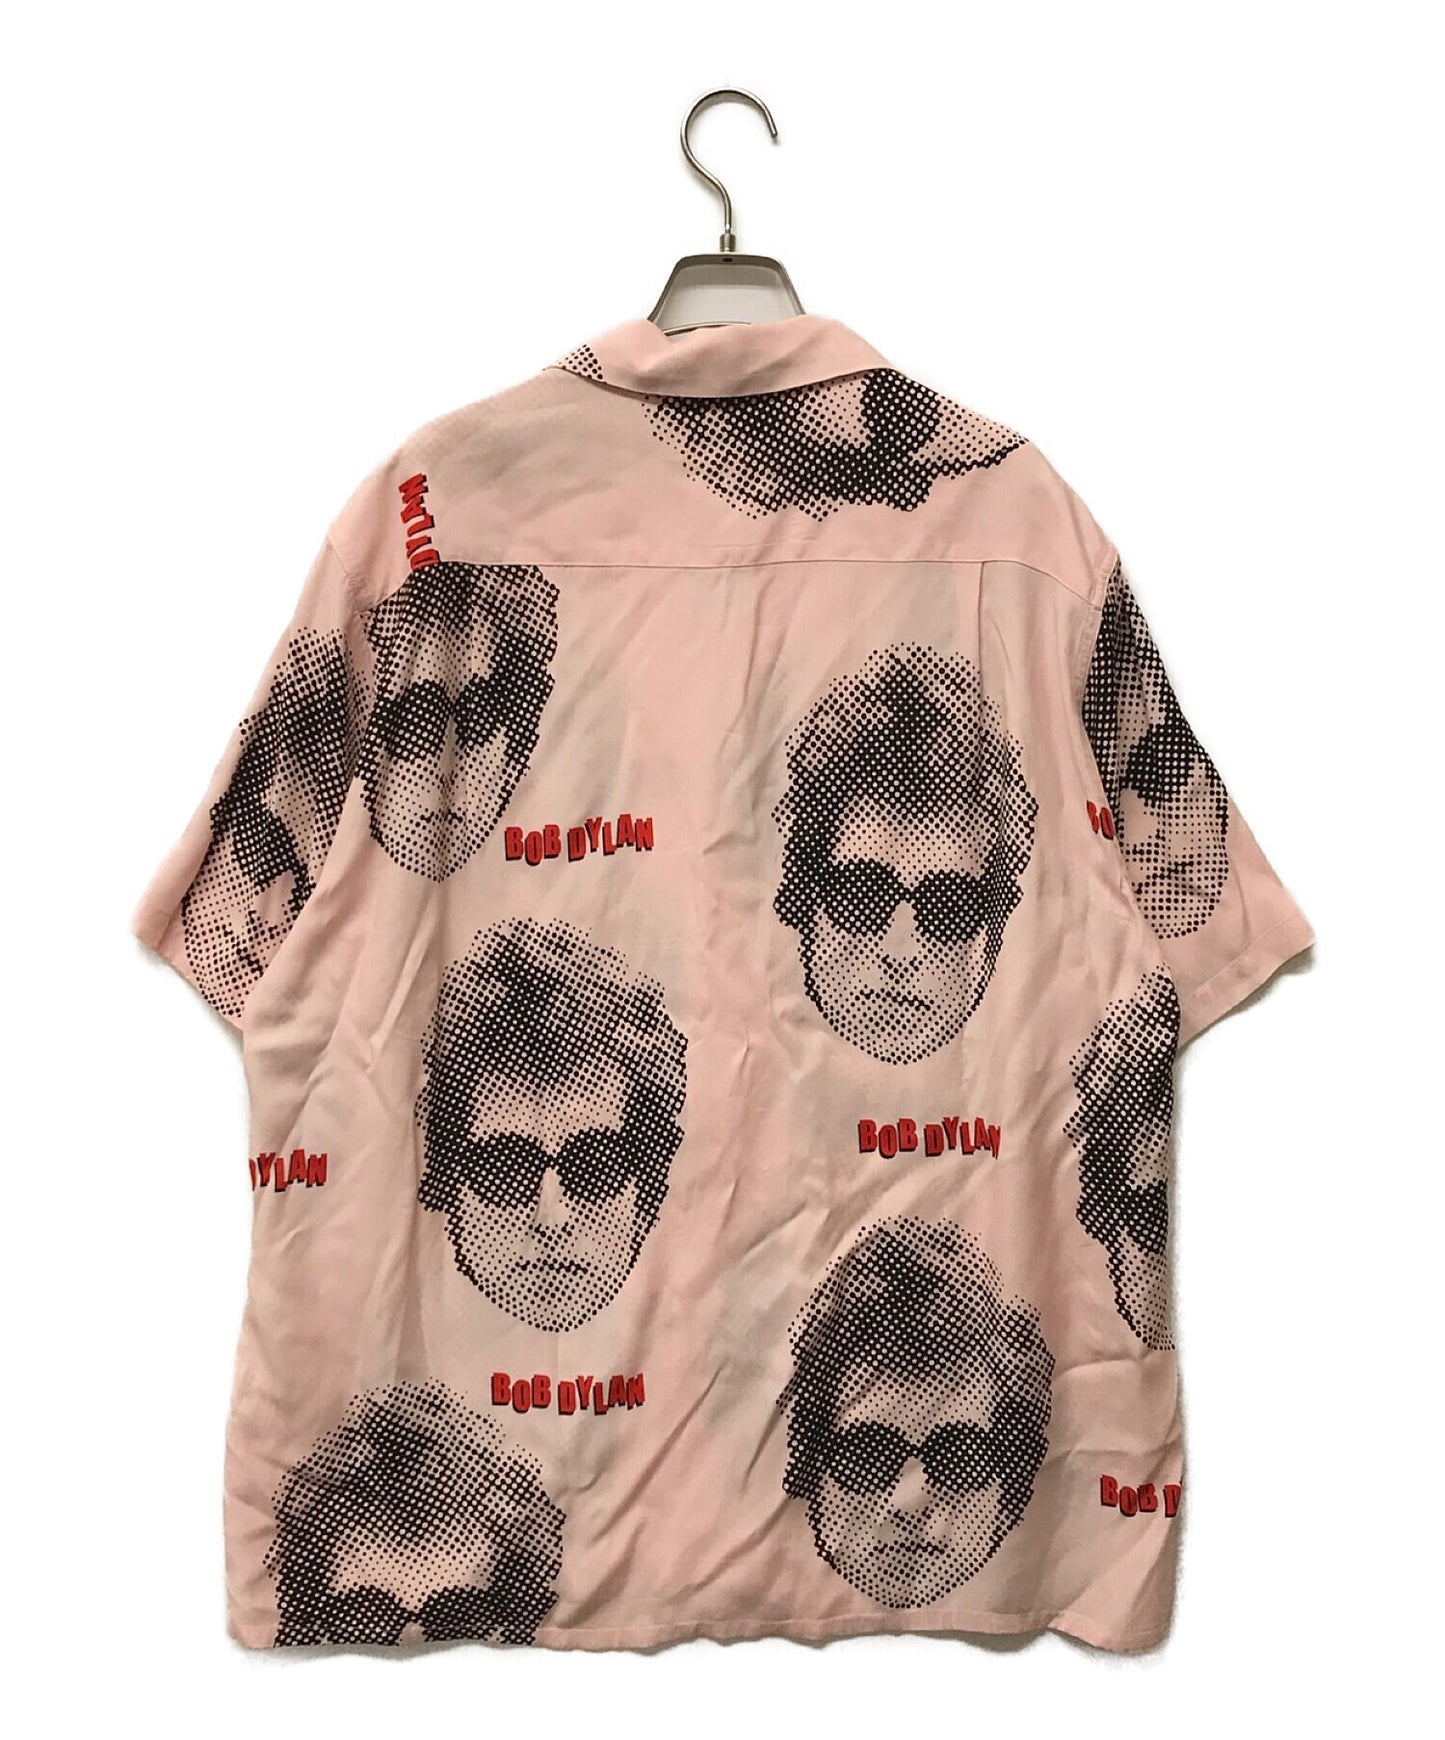 Wacko Maria Bob Dylan s/s เสื้อฮาวาย